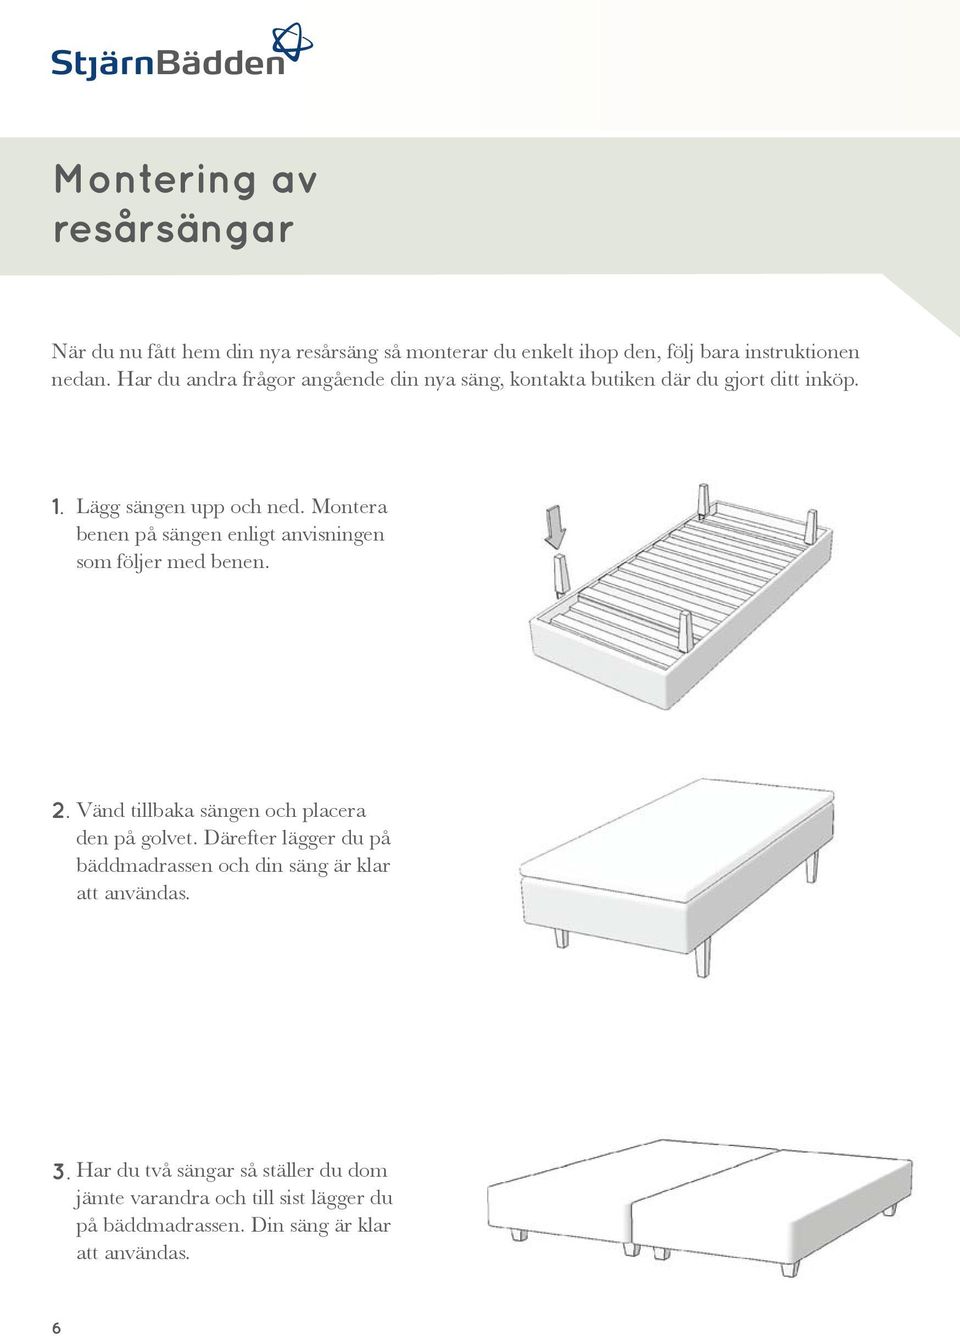 Montera benen på sängen enligt anvisningen som följer med benen. 2. Vänd tillbaka sängen och placera den på golvet.